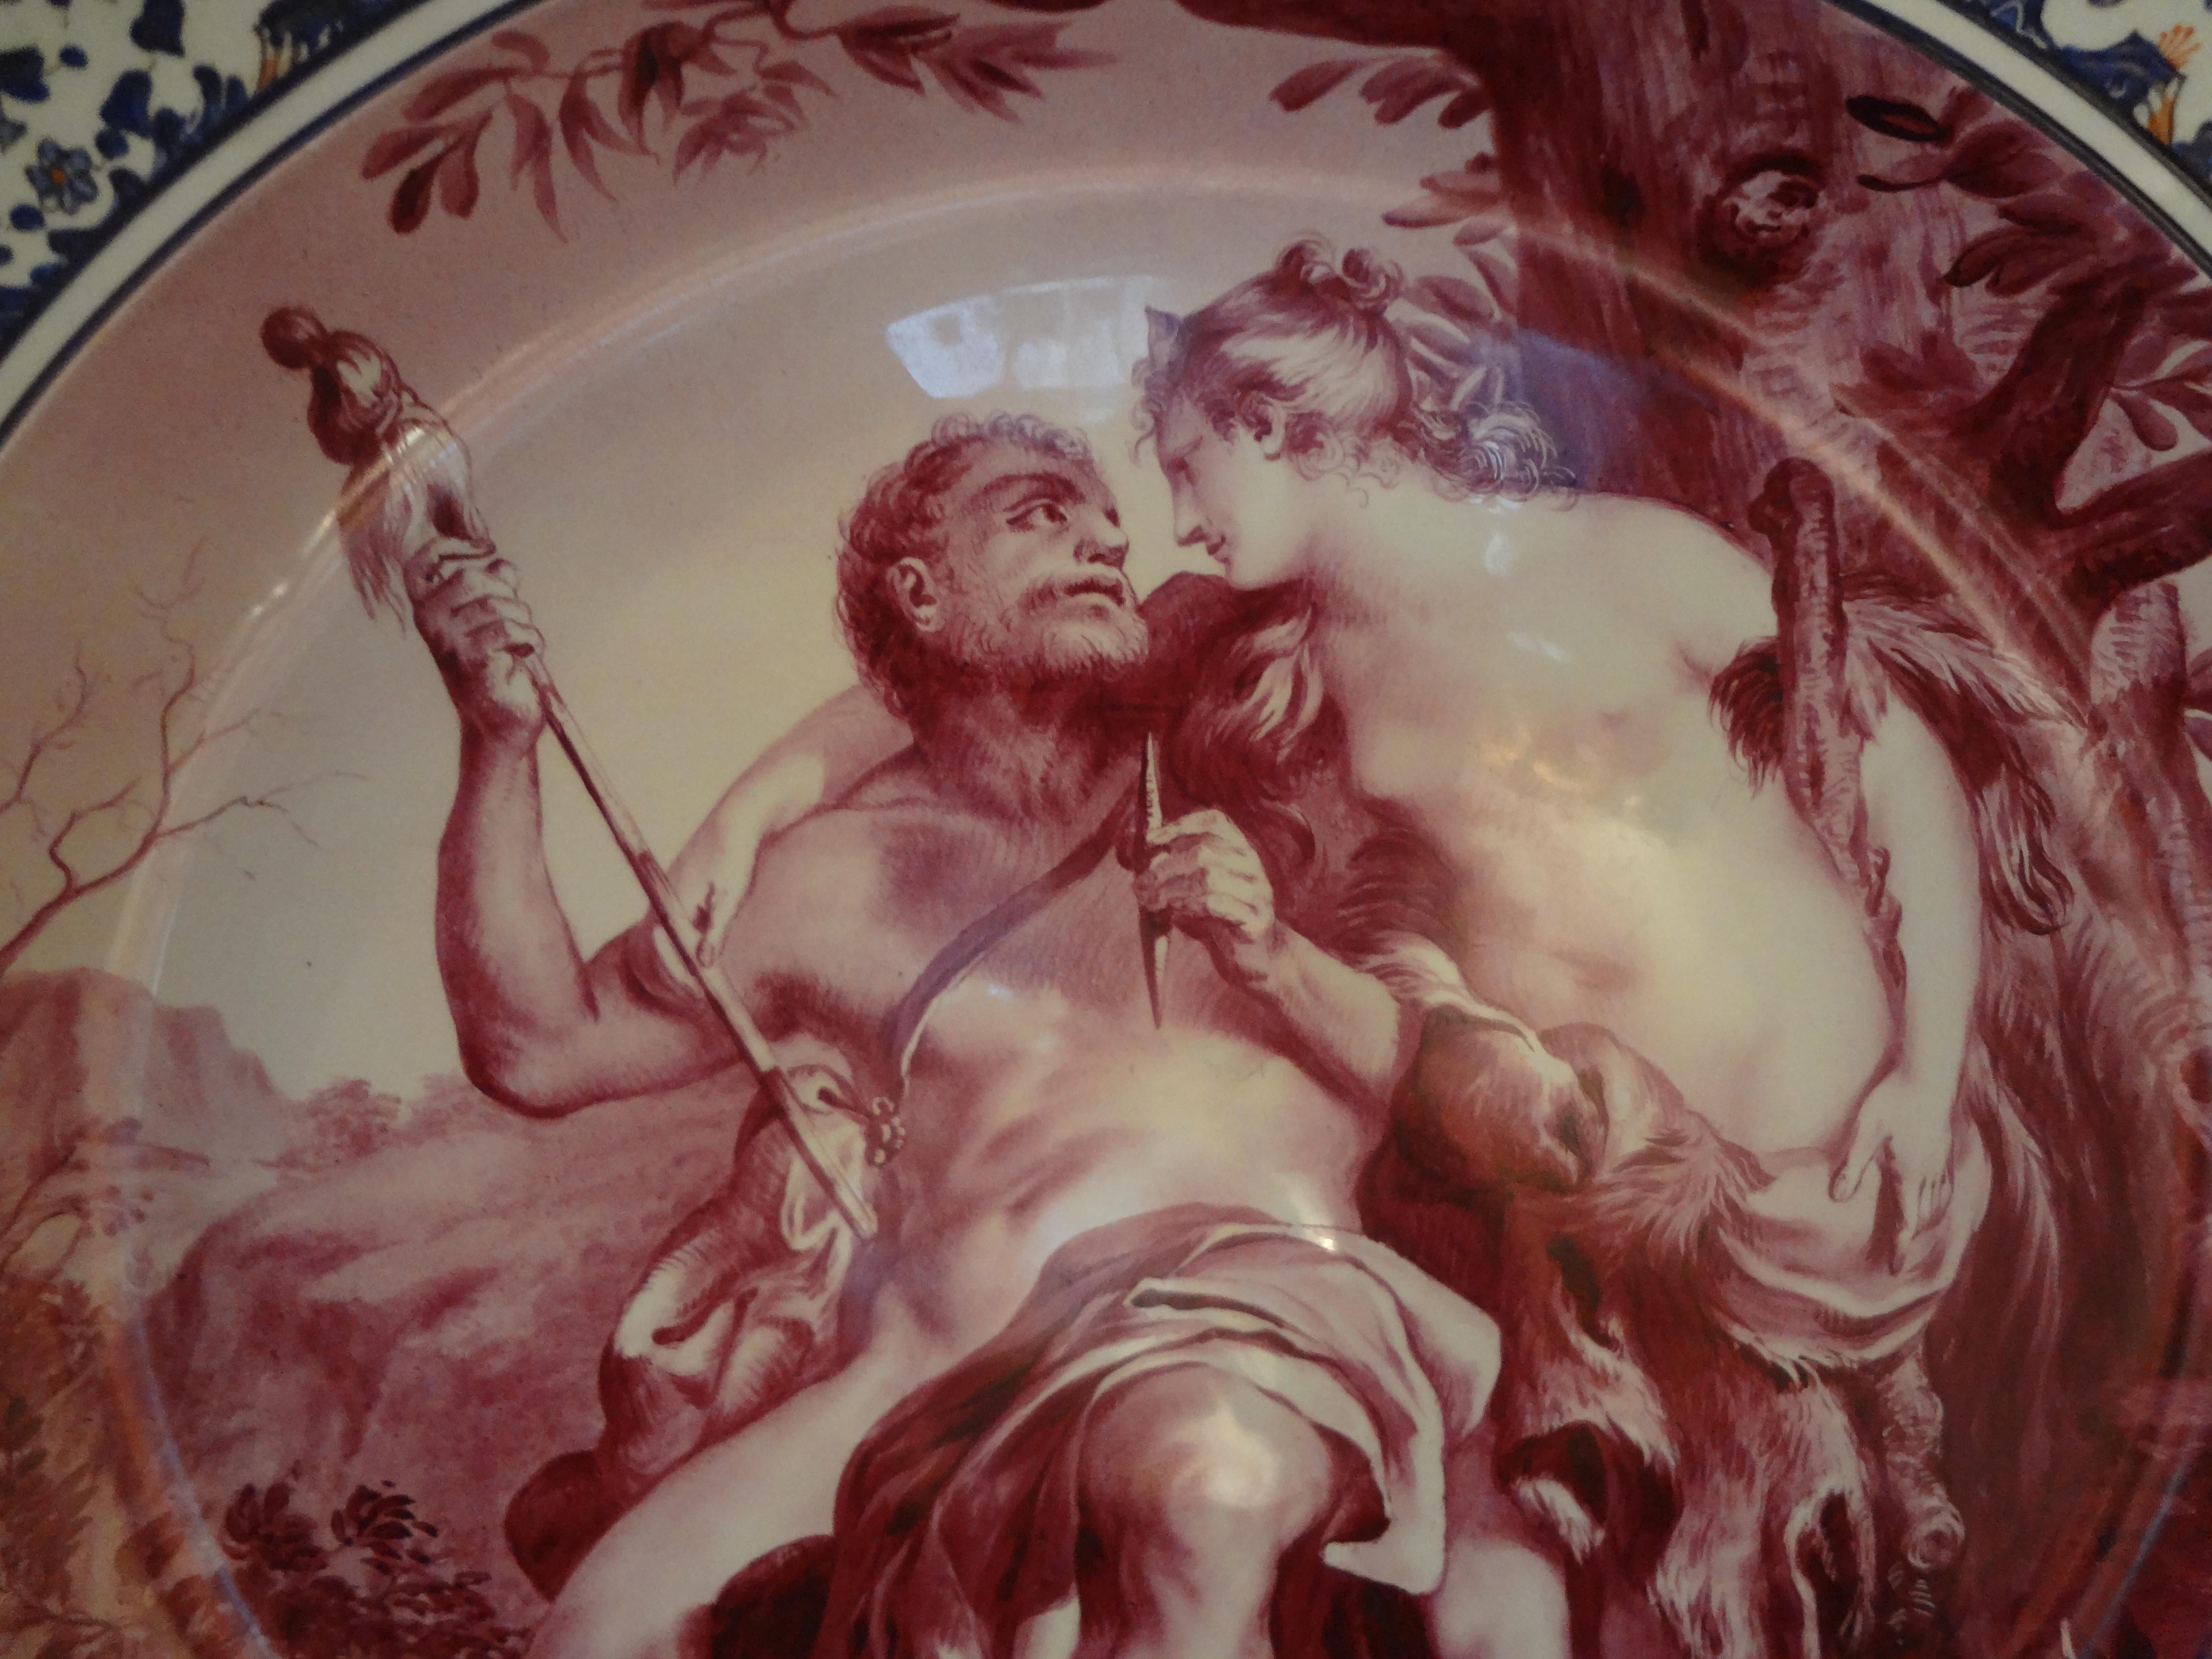 19. Jahrhundert Französisch Porzellan Allegorical Ladegerät.
Wunderschönes, von Hand dekoriertes und vom Künstler signiertes allegorisches Porzellangeschirr aus dem 19.
Dieses schöne, gut ausgeführte Fayence-Ladegerät, das Herkules darstellt, ist in